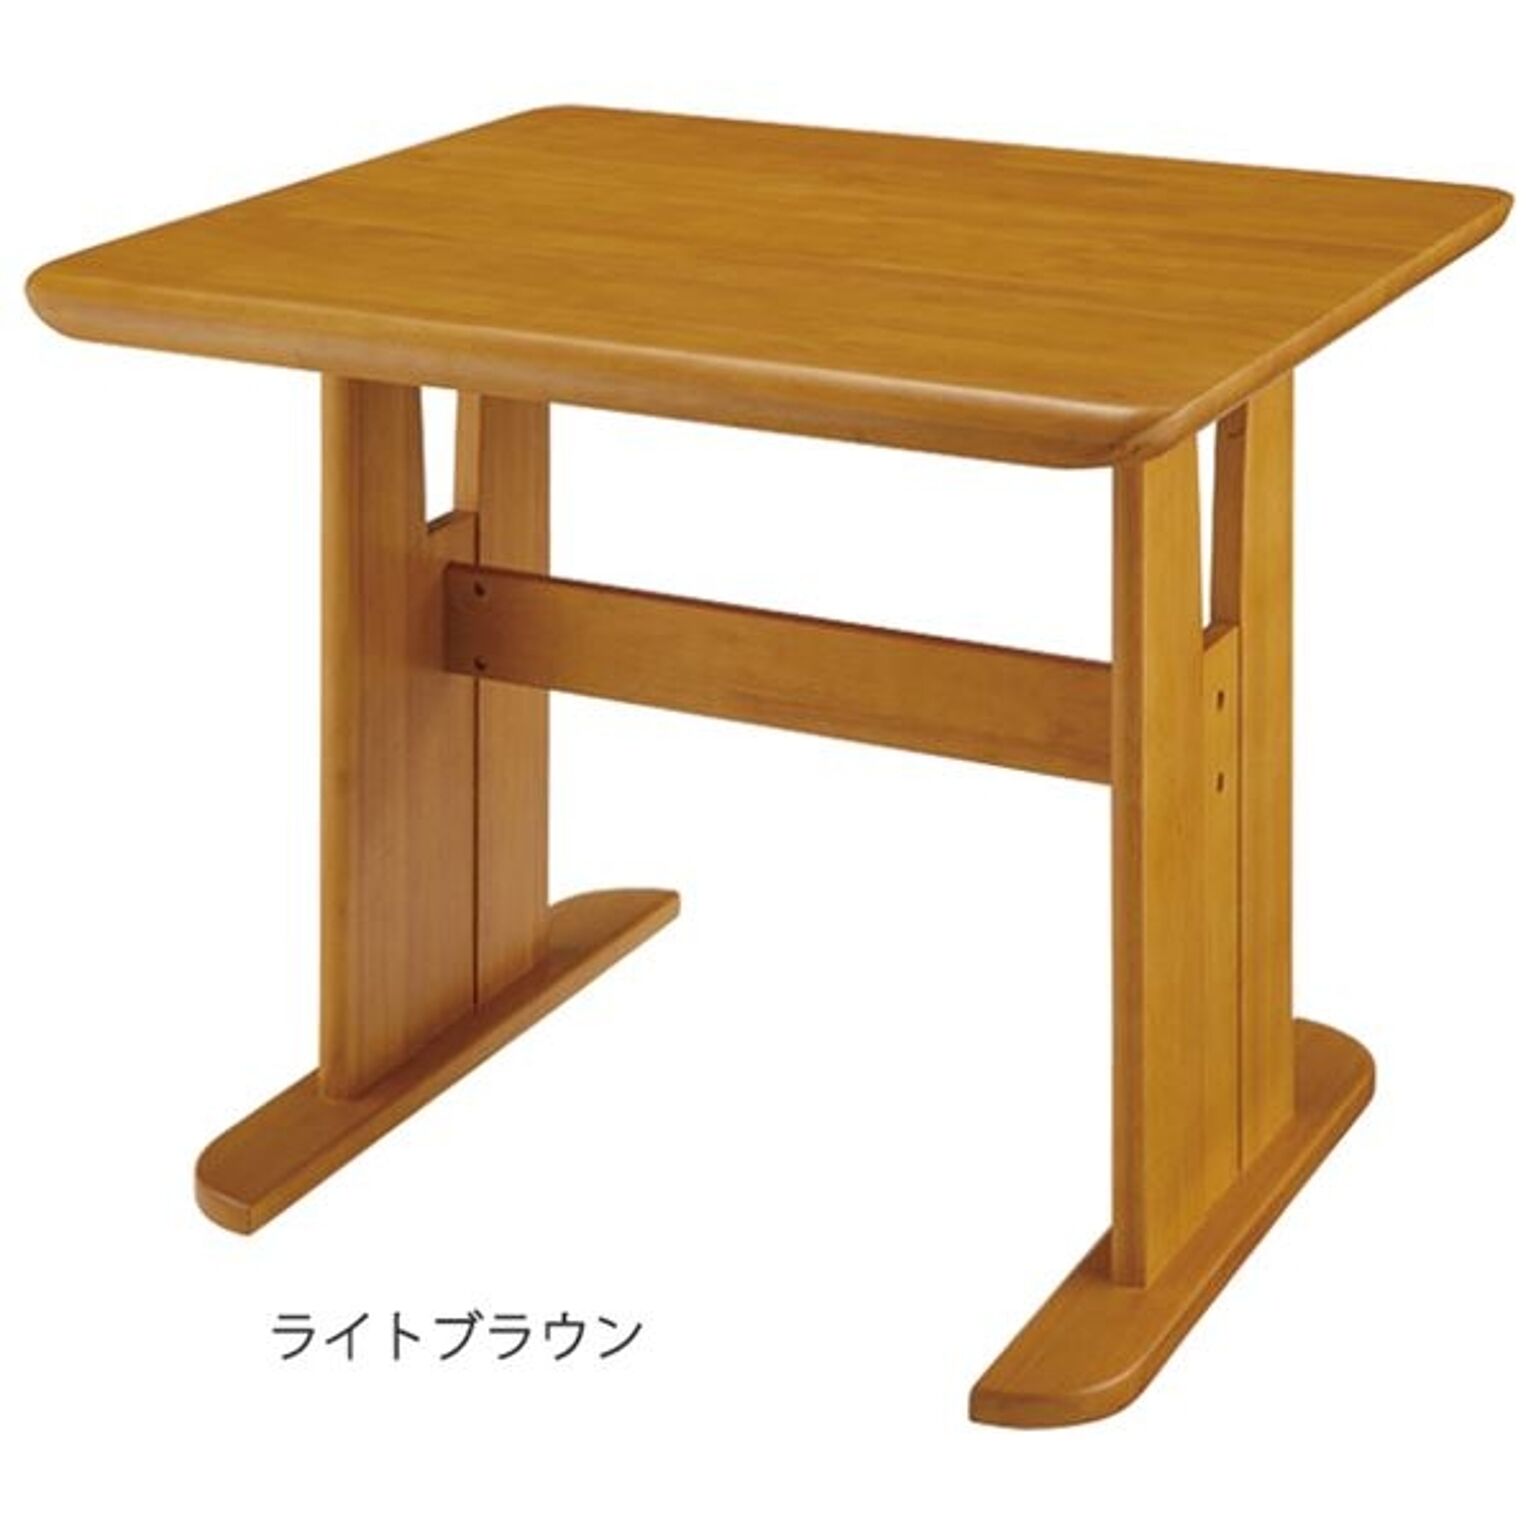 綾野製作所 セラミックダイニングテーブル エクセラ - 机/テーブル